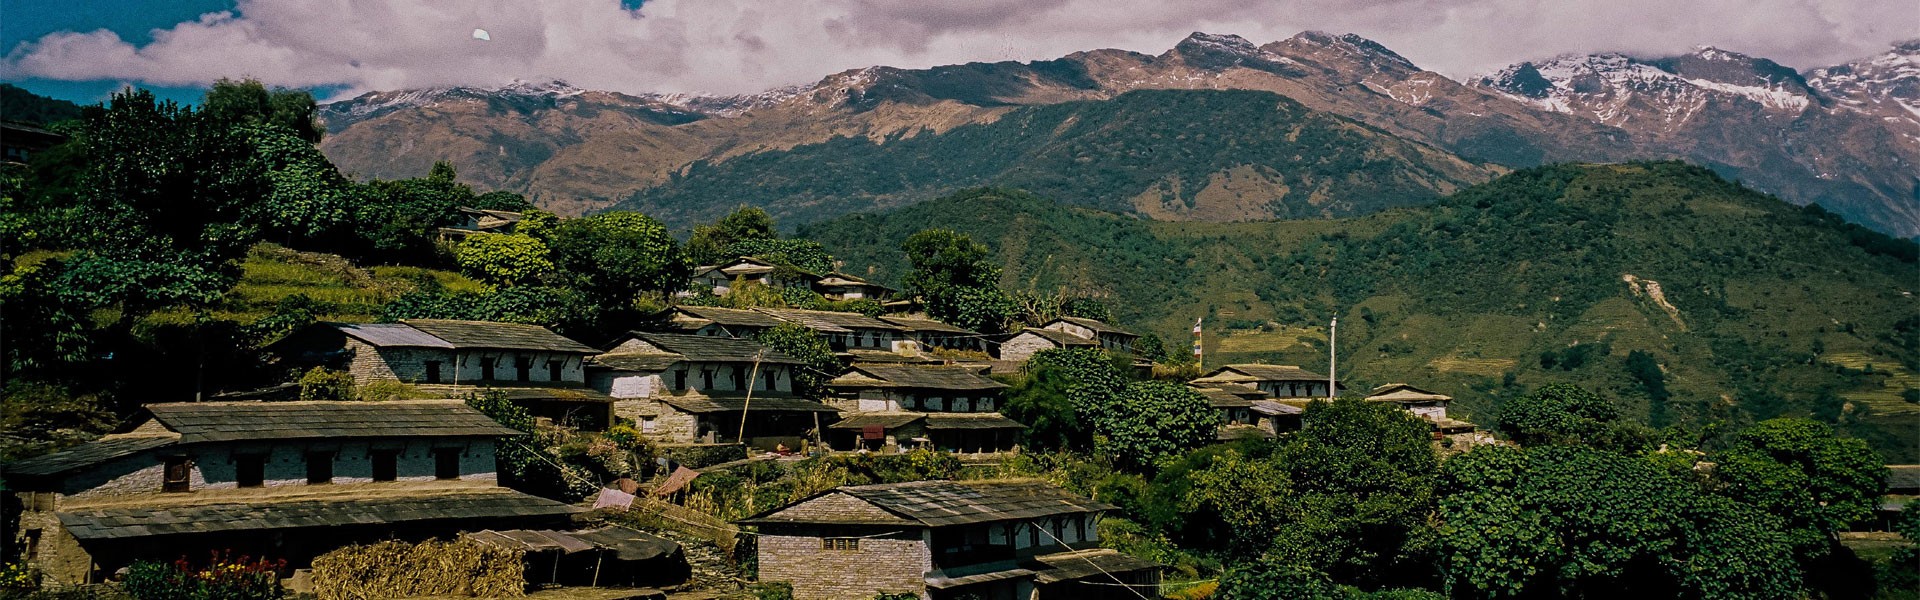 Ghandrung Village